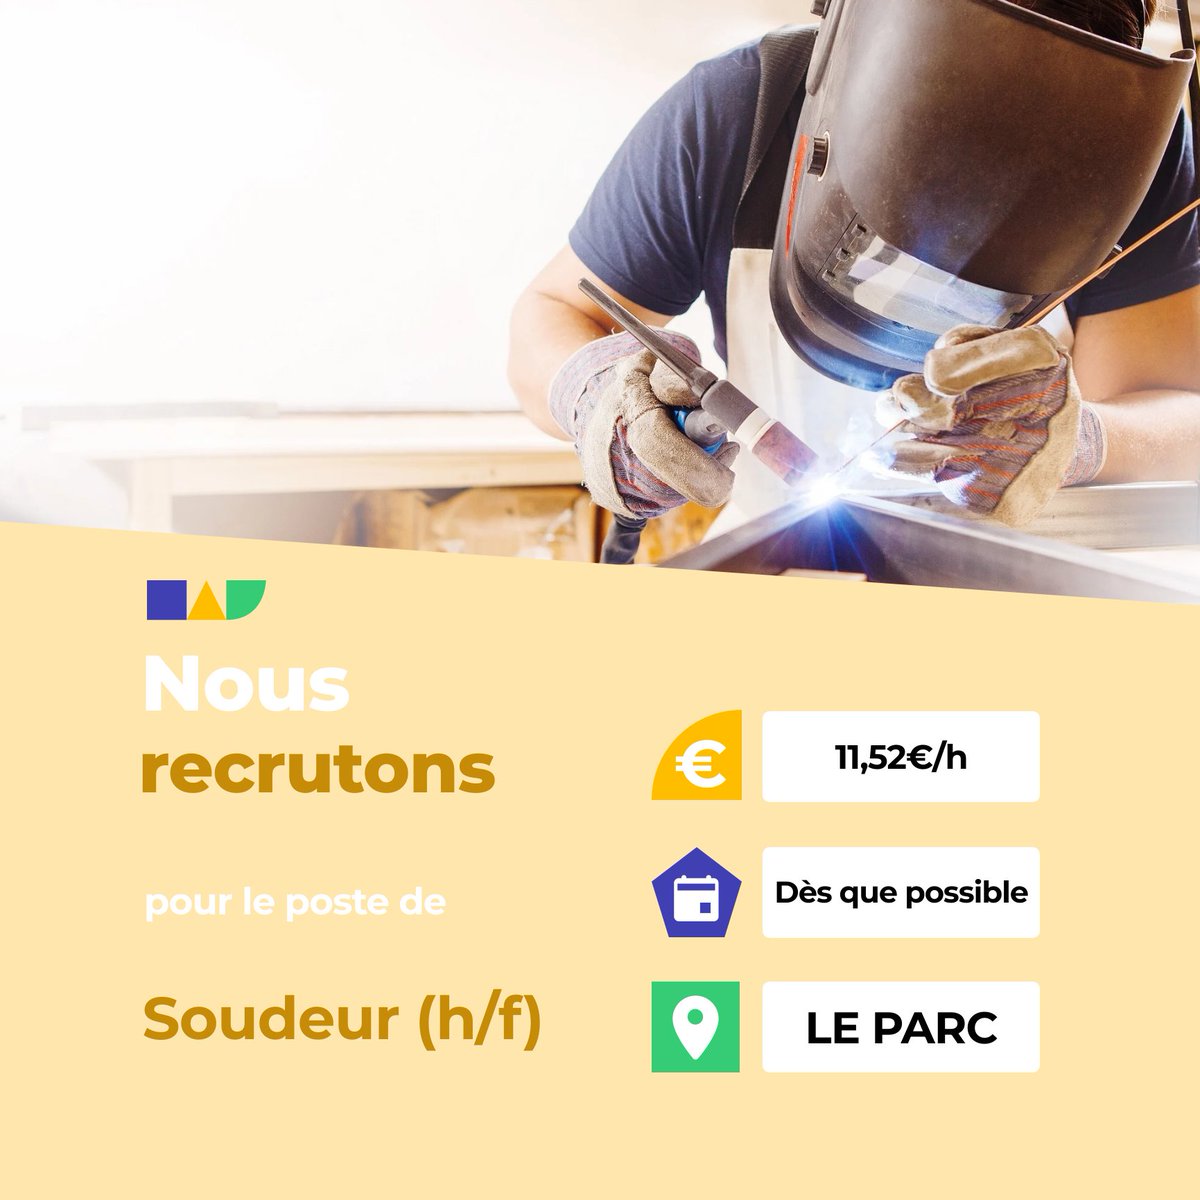 🛎️ Nouvelle offre d'emploi : Soudeur (h/f) 🌎 LE PARC (50870) 📅 Démarrage dans les 7 prochains jours 👉 Plus d'infos : jobs.iziwork.com/fr/offre-emplo… #recrutement #intérim #emploi #OffreEmploi #job #iziwork